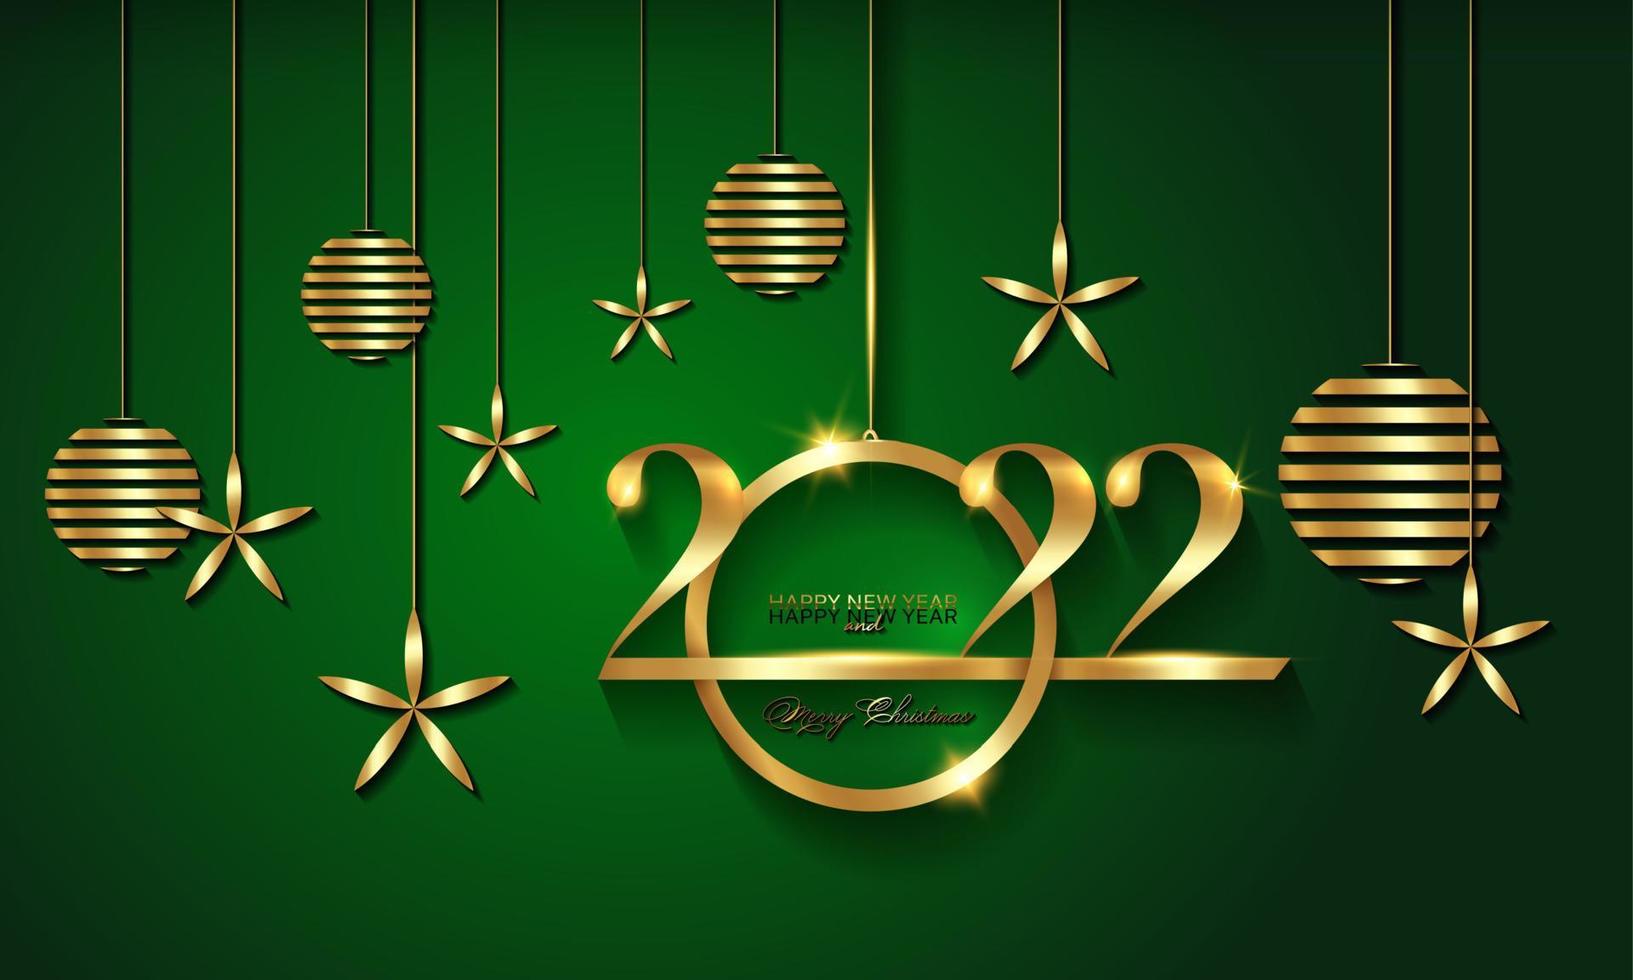 2022 banner navideño de vacaciones de lujo con oro feliz navidad y próspero año nuevo, bolas navideñas de color dorado. ilustración vectorial aislado sobre fondo verde vector